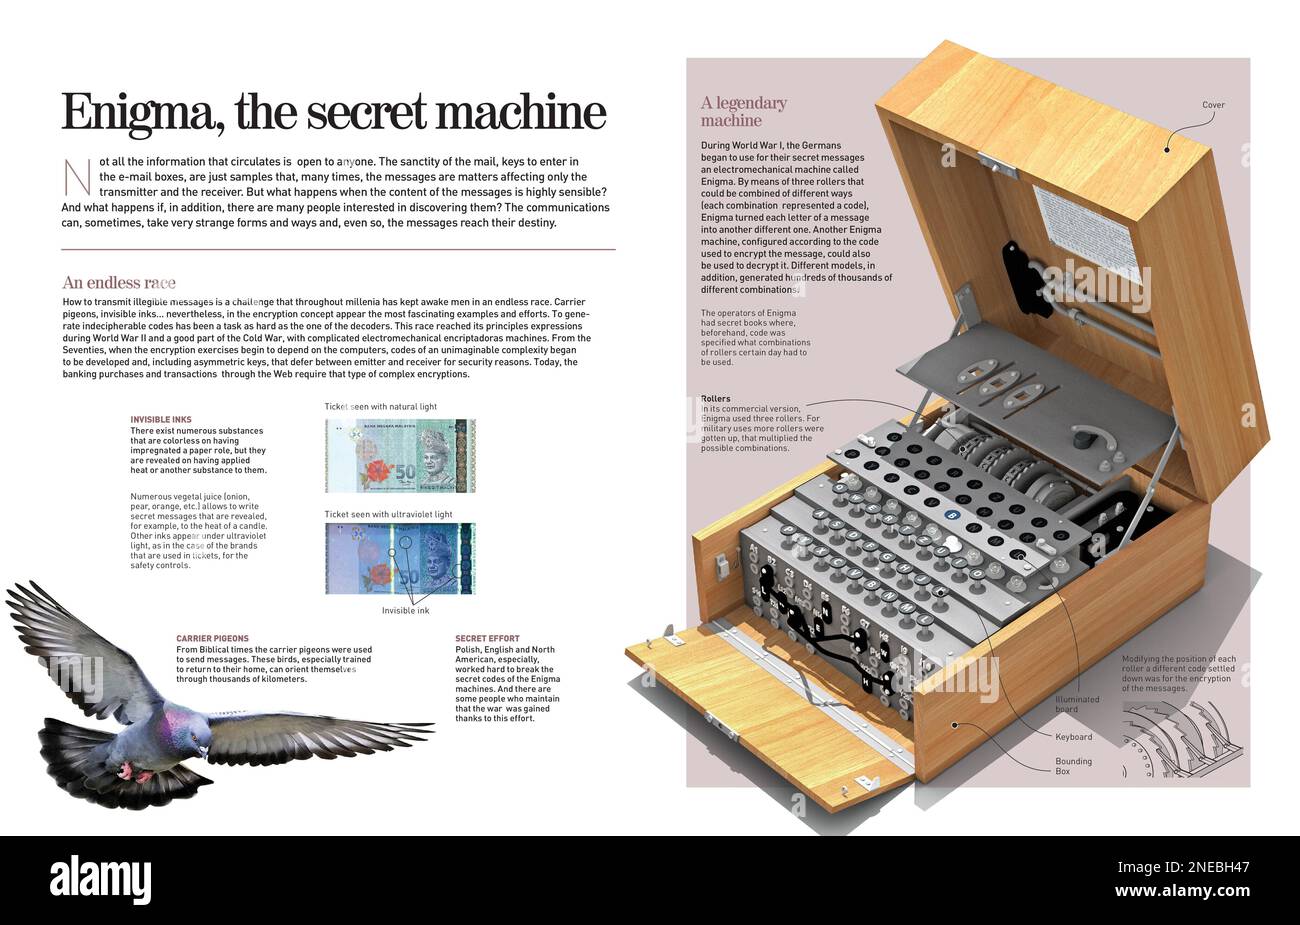 Infografik über die elektromechanische Enigma-Maschine, die während des Ersten Weltkriegs von den Deutschen verwendet wurde, um geheime Botschaften zu senden, die von Gegnern nicht abgefangen wurden. [Adobe InDesign (.indd)]. Stockfoto